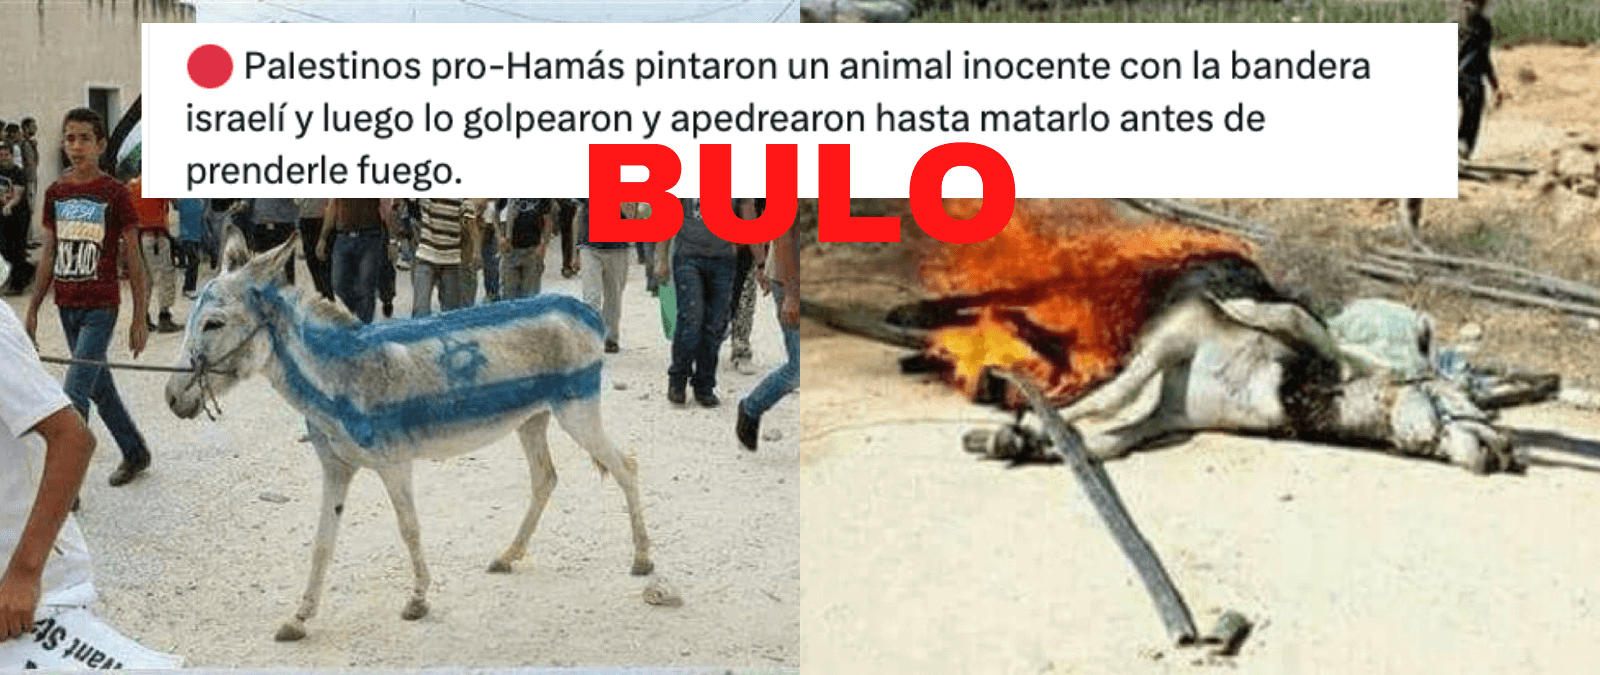 No, estas imágenes no muestran a “palestinos pro-hamás” pintando un burro con la bandera israelí y después quemándolo: son imágenes tomadas en años y lugares diferentes